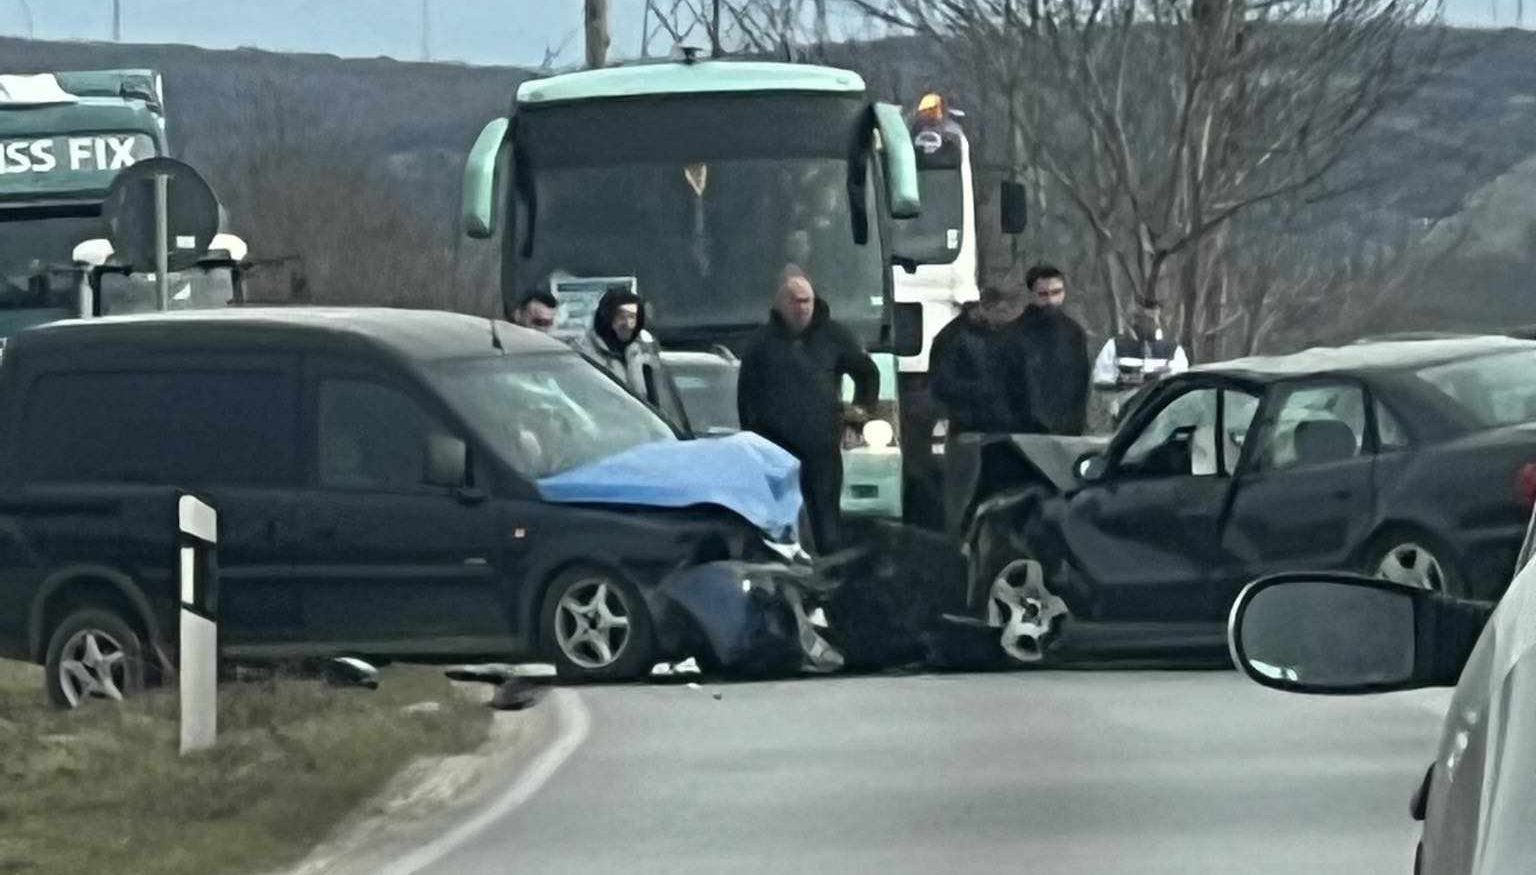 Aksident në dalje të Gjakovës, dy vetura përplasen rëndë me njëra-tjetrën – VIDEO